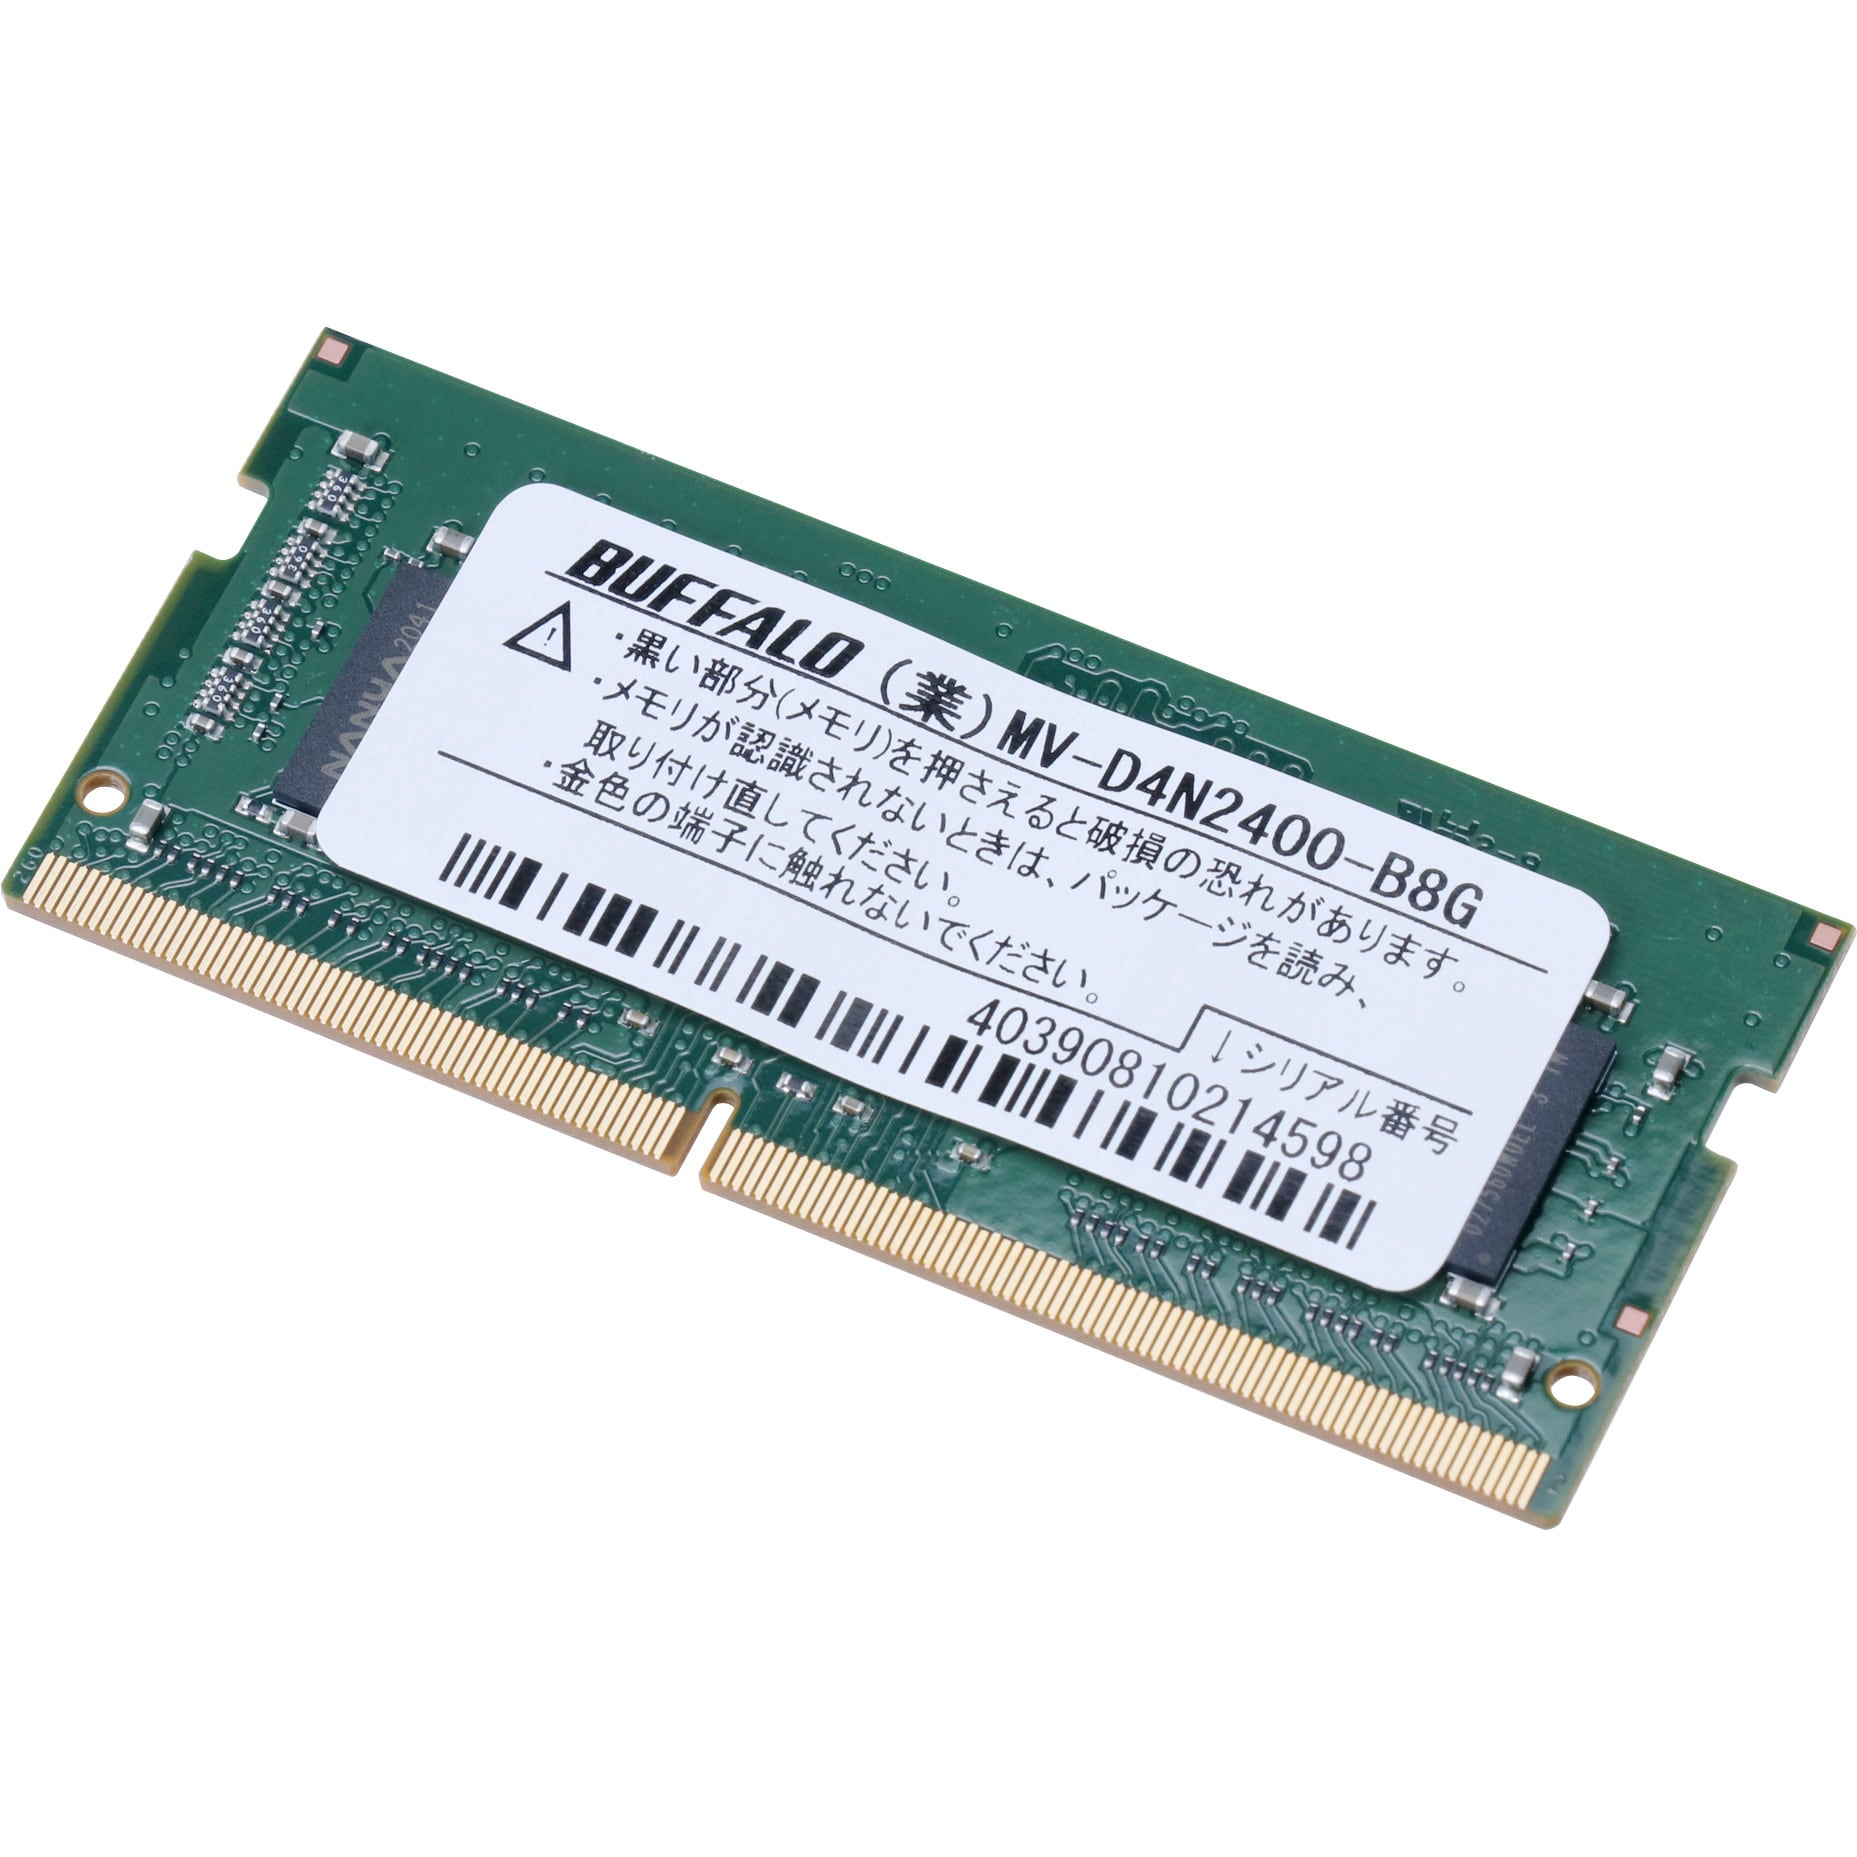 PCパーツ BUFFALO PC4-2400対応 260ピン DDR4 SDRAM SO-DIMM D4N2400-B8G-